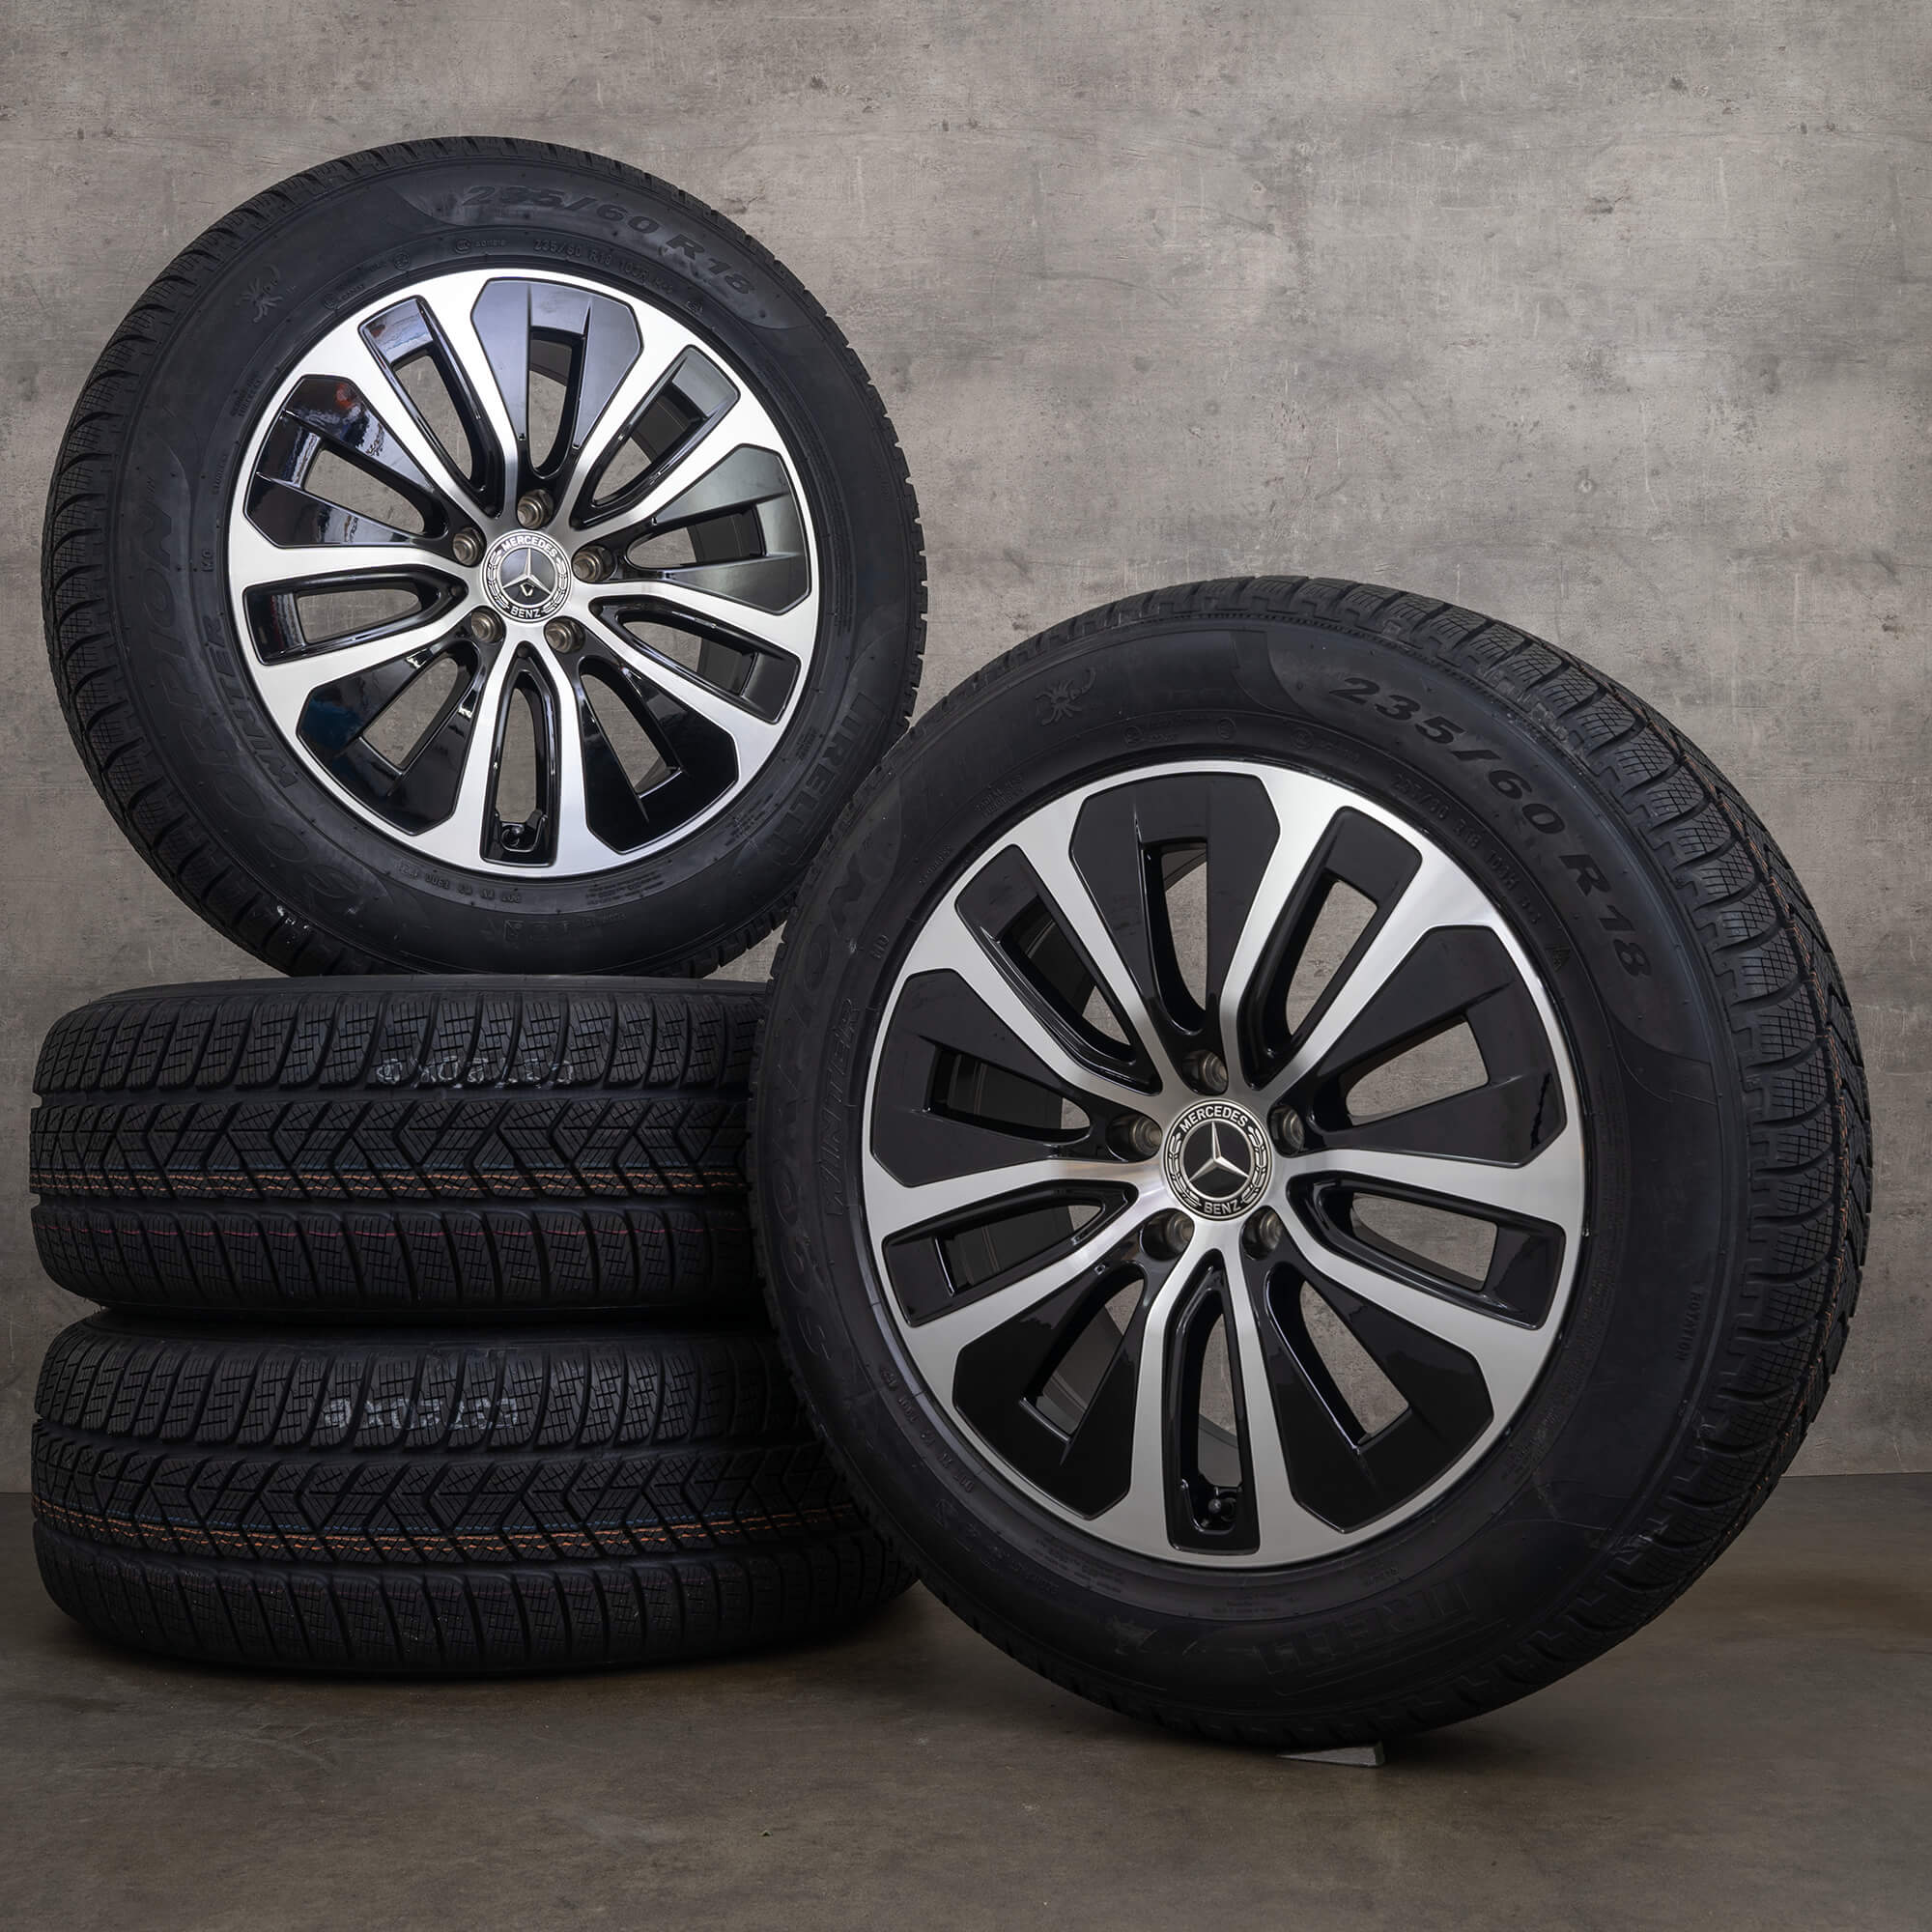 Jantes originais Mercedes GLC C254 de 18 polegadas para pneus inverno A2544015100 preto alto brilho NOVO